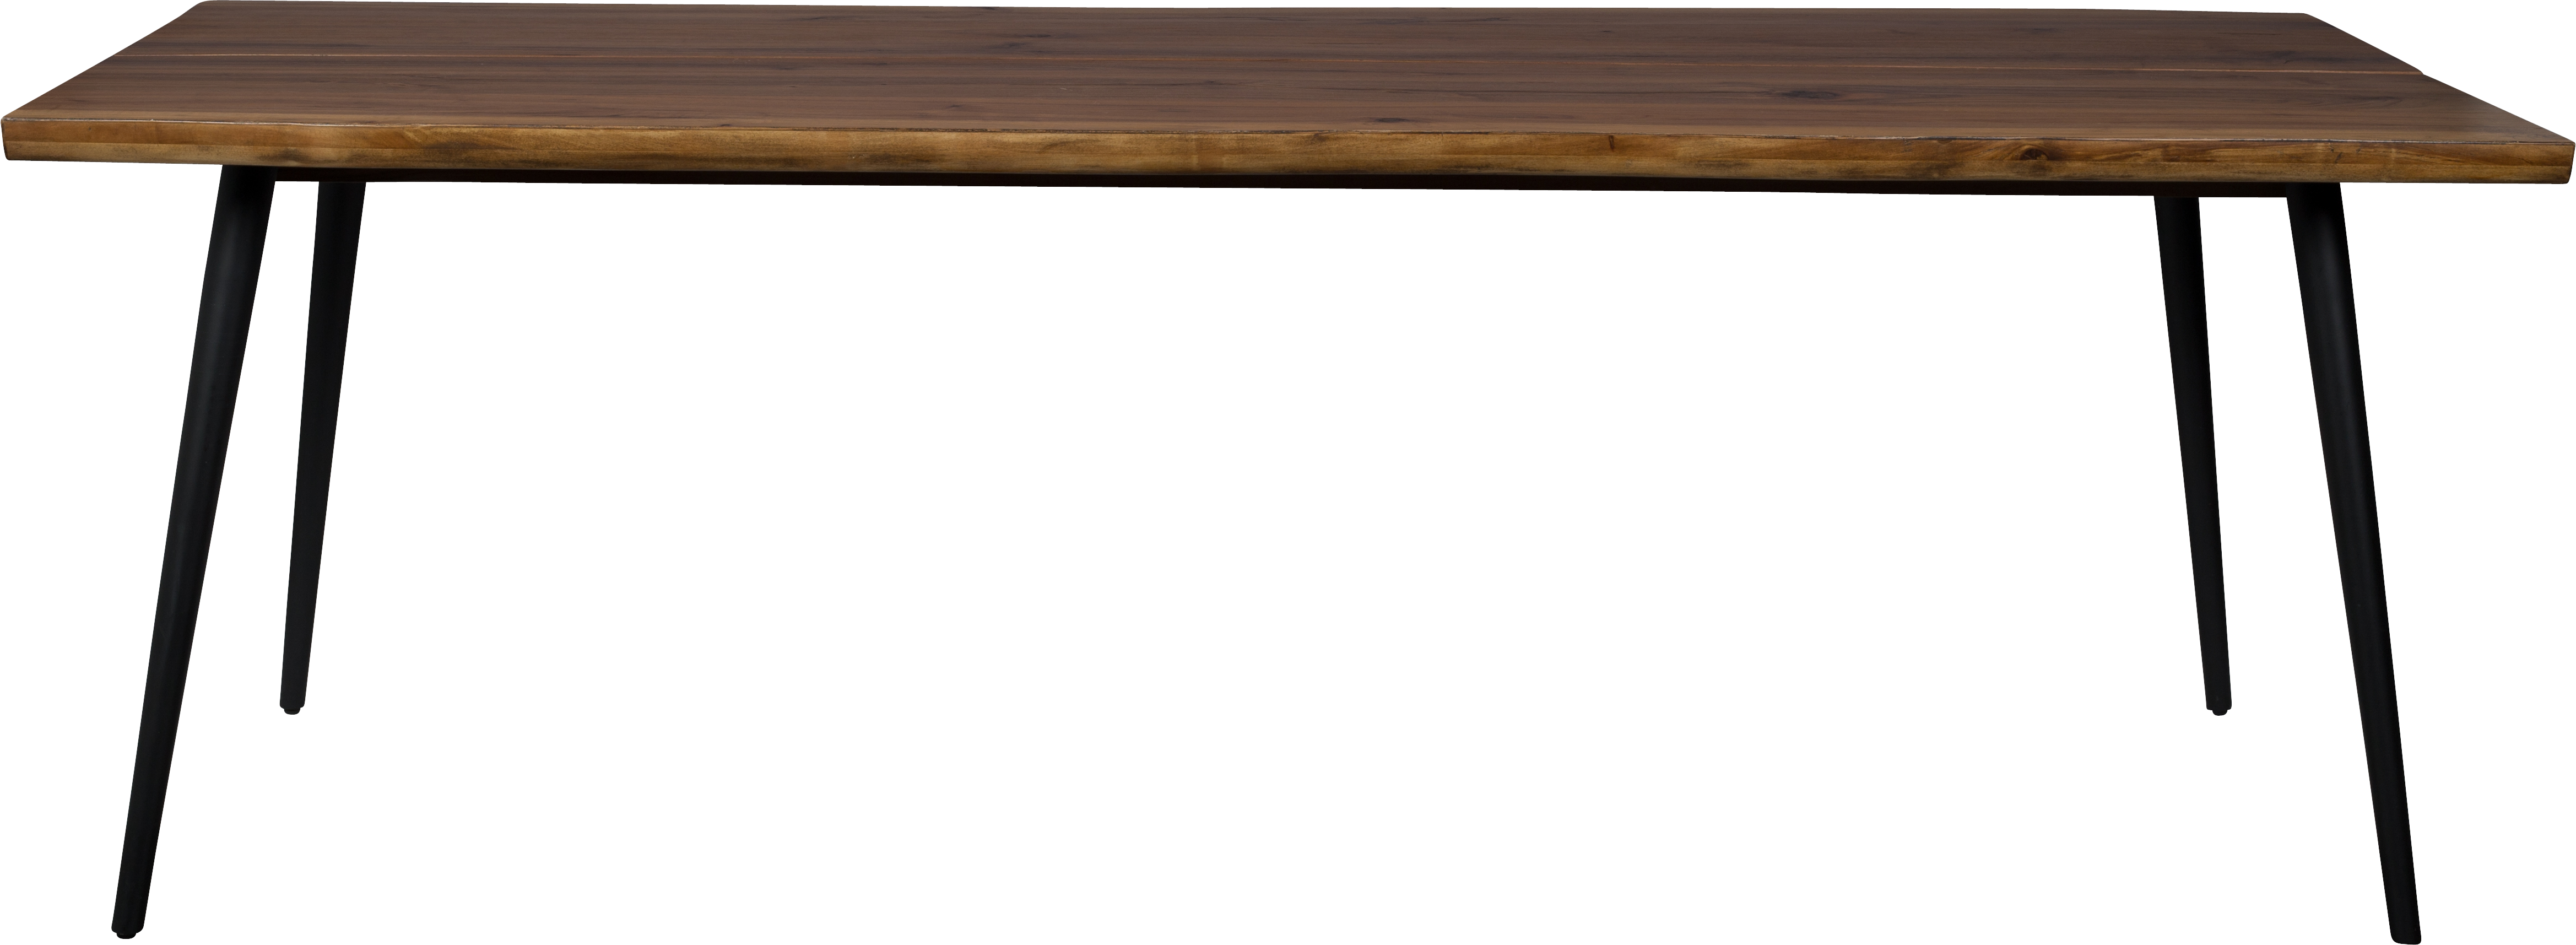 Dutchbone Alagon jedálenský stôl - 220 x 90 cm - VÝPREDAJ